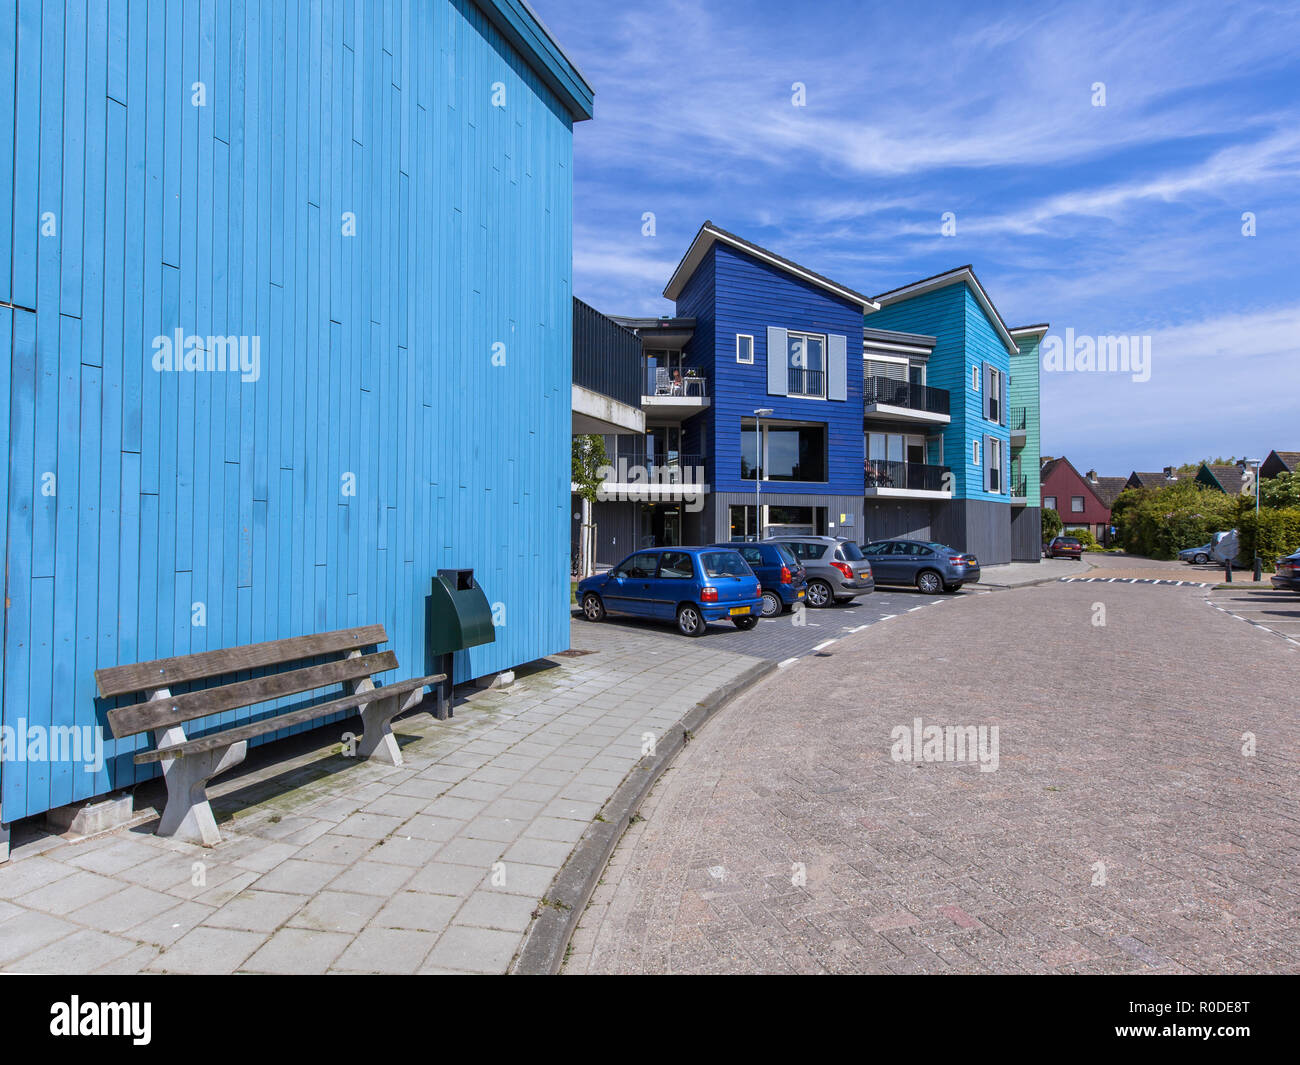 Holzbank in einer Straße mit modernen Häusern. Zeitgenössische Architektur kann auf viele Orte in den Niederlanden wie hier in der Naehe von Amsterdam gefunden werden. Stockfoto